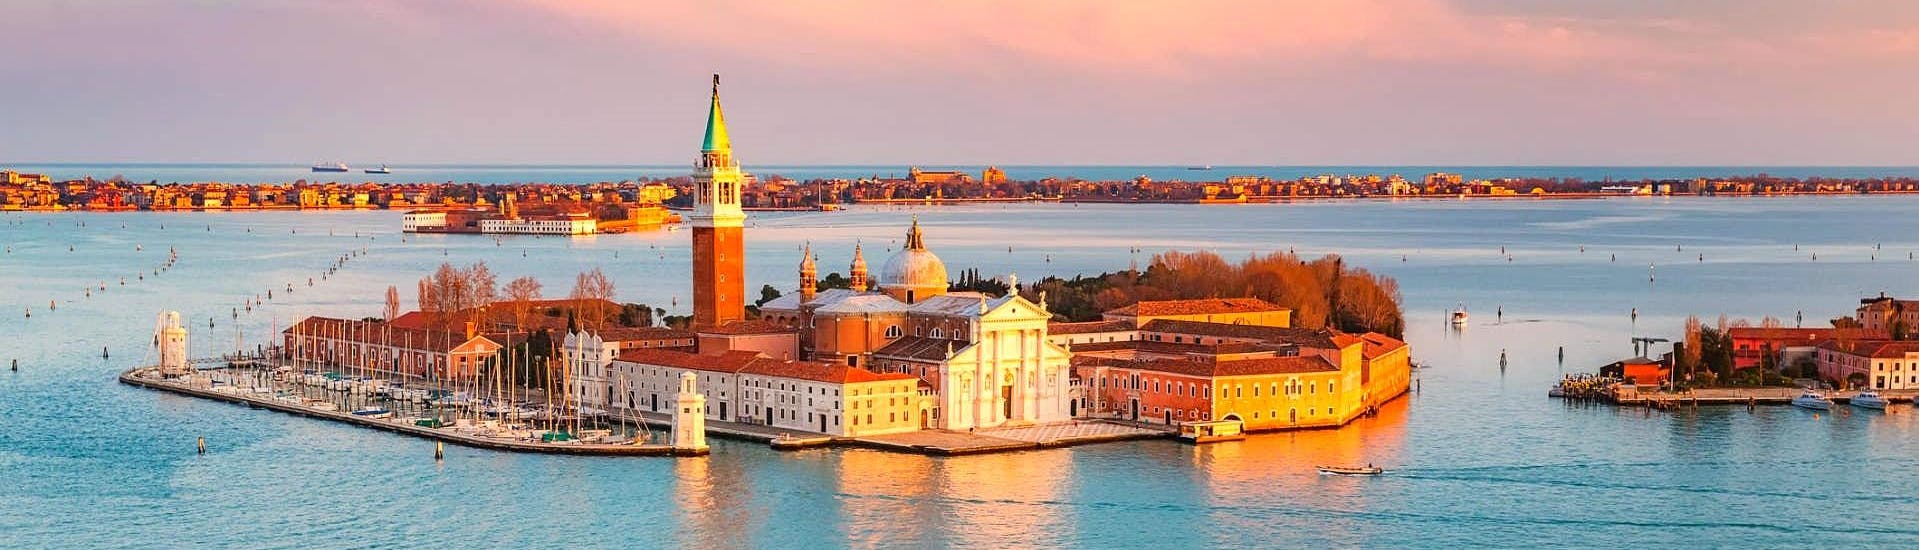 Giro in barca privata a Venezia al tramonto.